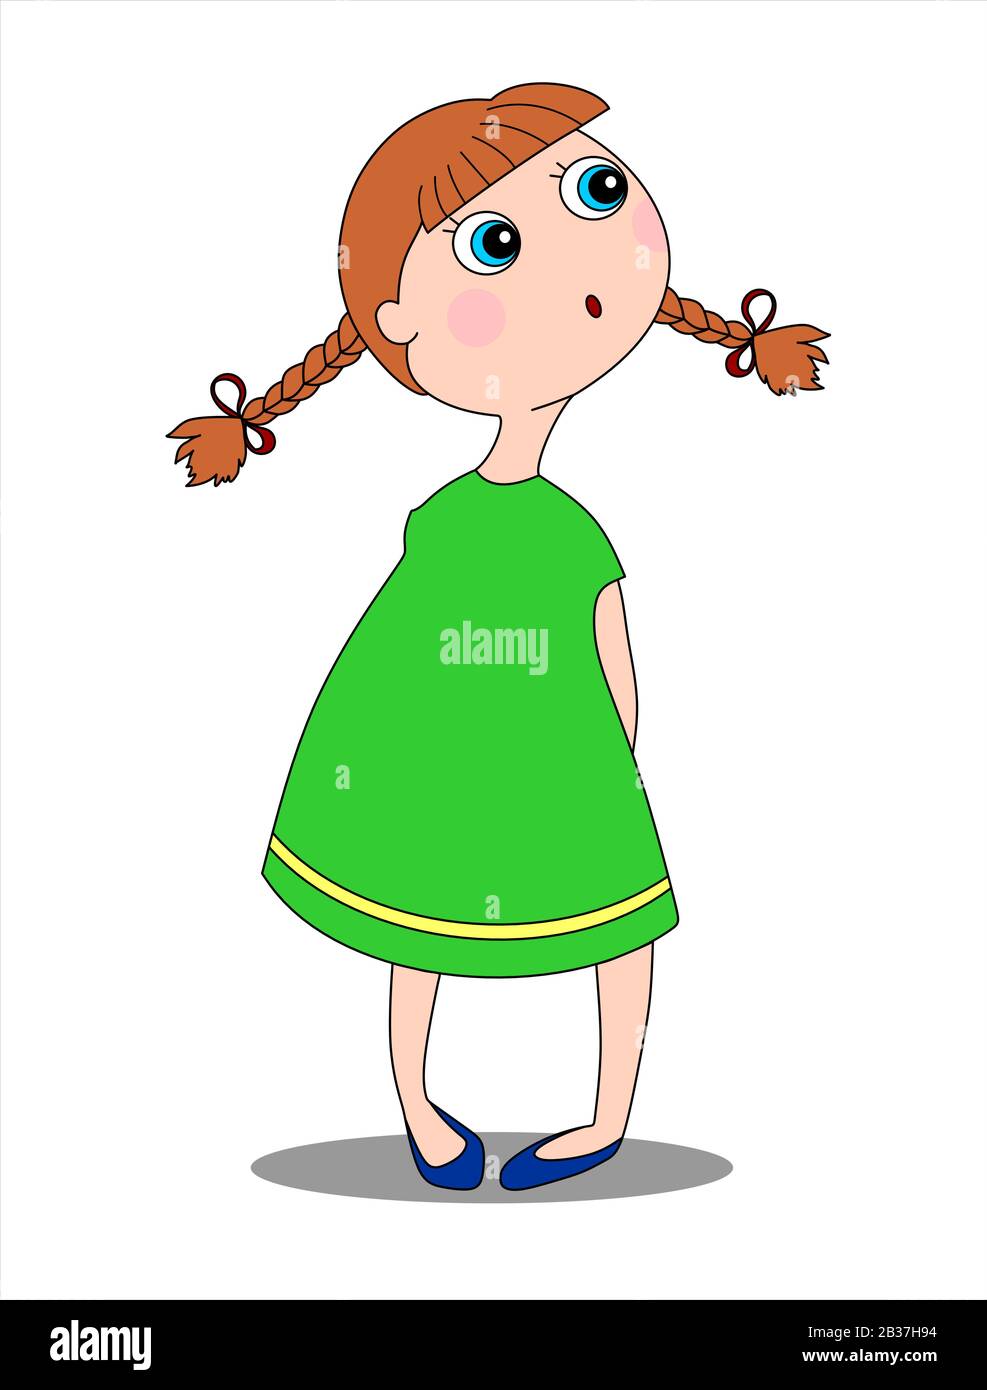 Une petite fille surprise aux yeux bleus, aux cheveux rouges, tressée dans les queues de porc, dans une robe verte et des chaussures bleues regarde vers la gauche. Image vectorielle isolée. Illustration de Vecteur